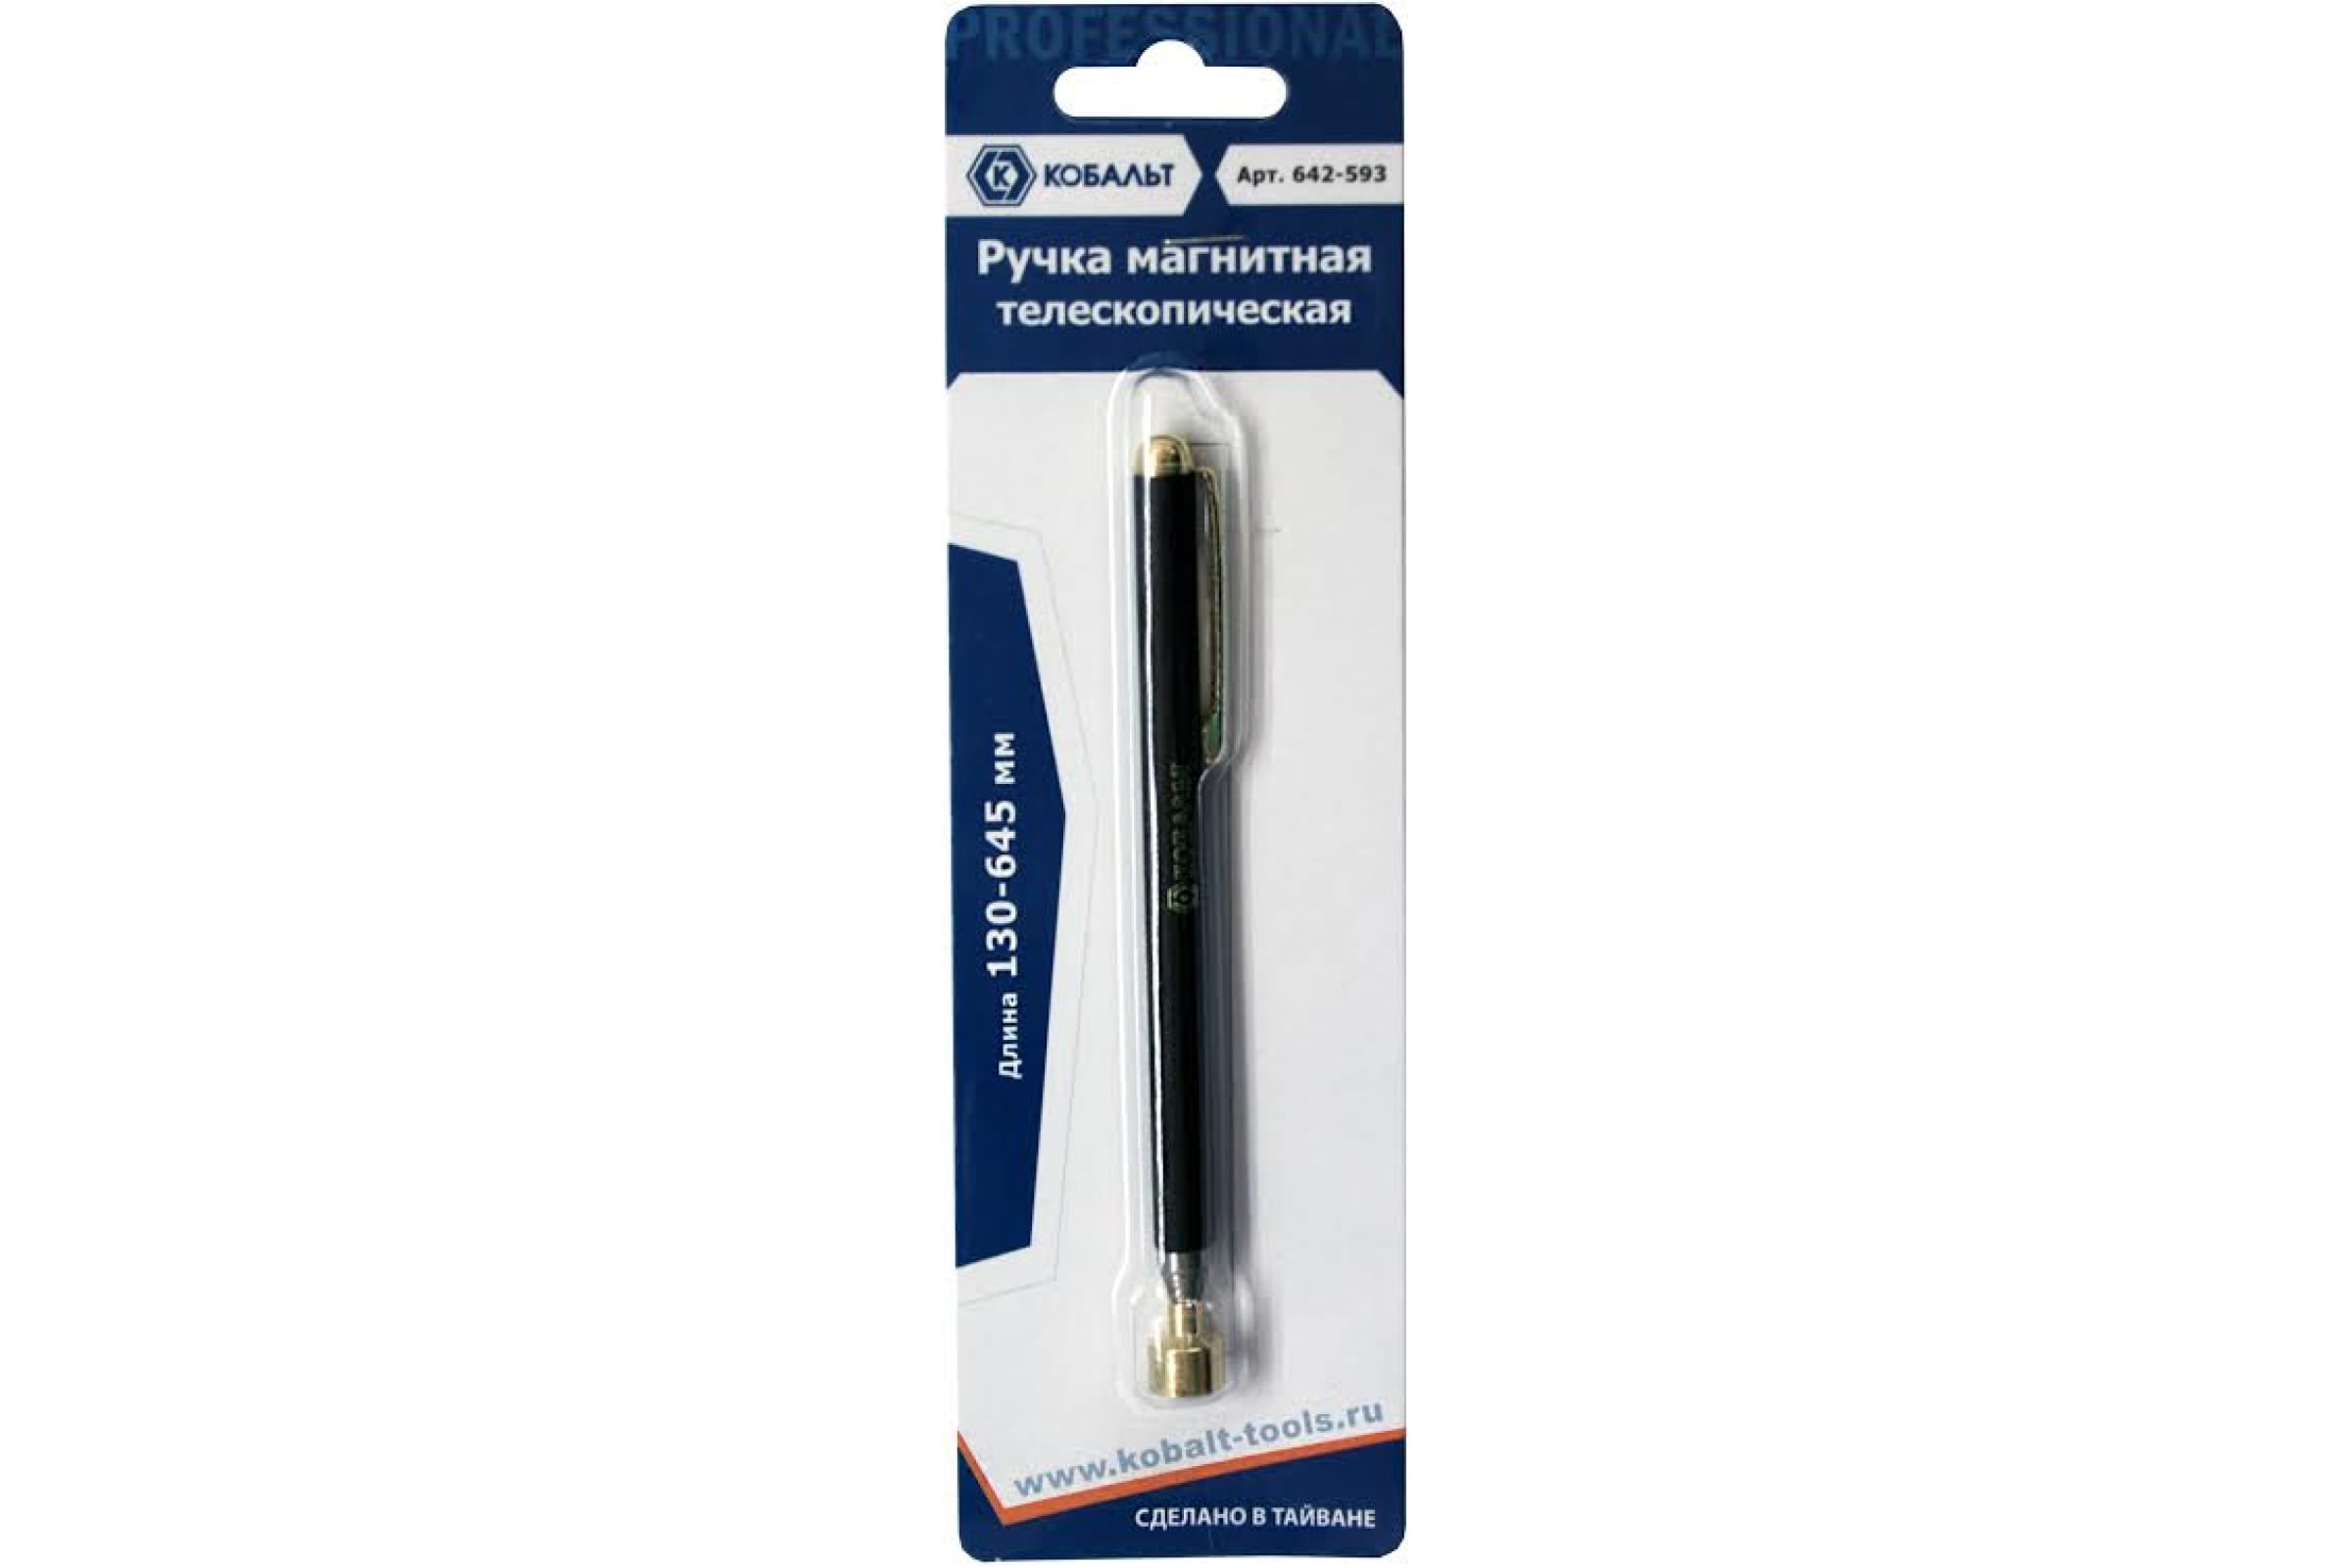 Ручка магнитная (130-645 мм) в блистере КОБАЛЬТ 642-593 магнитная ручка кобальт